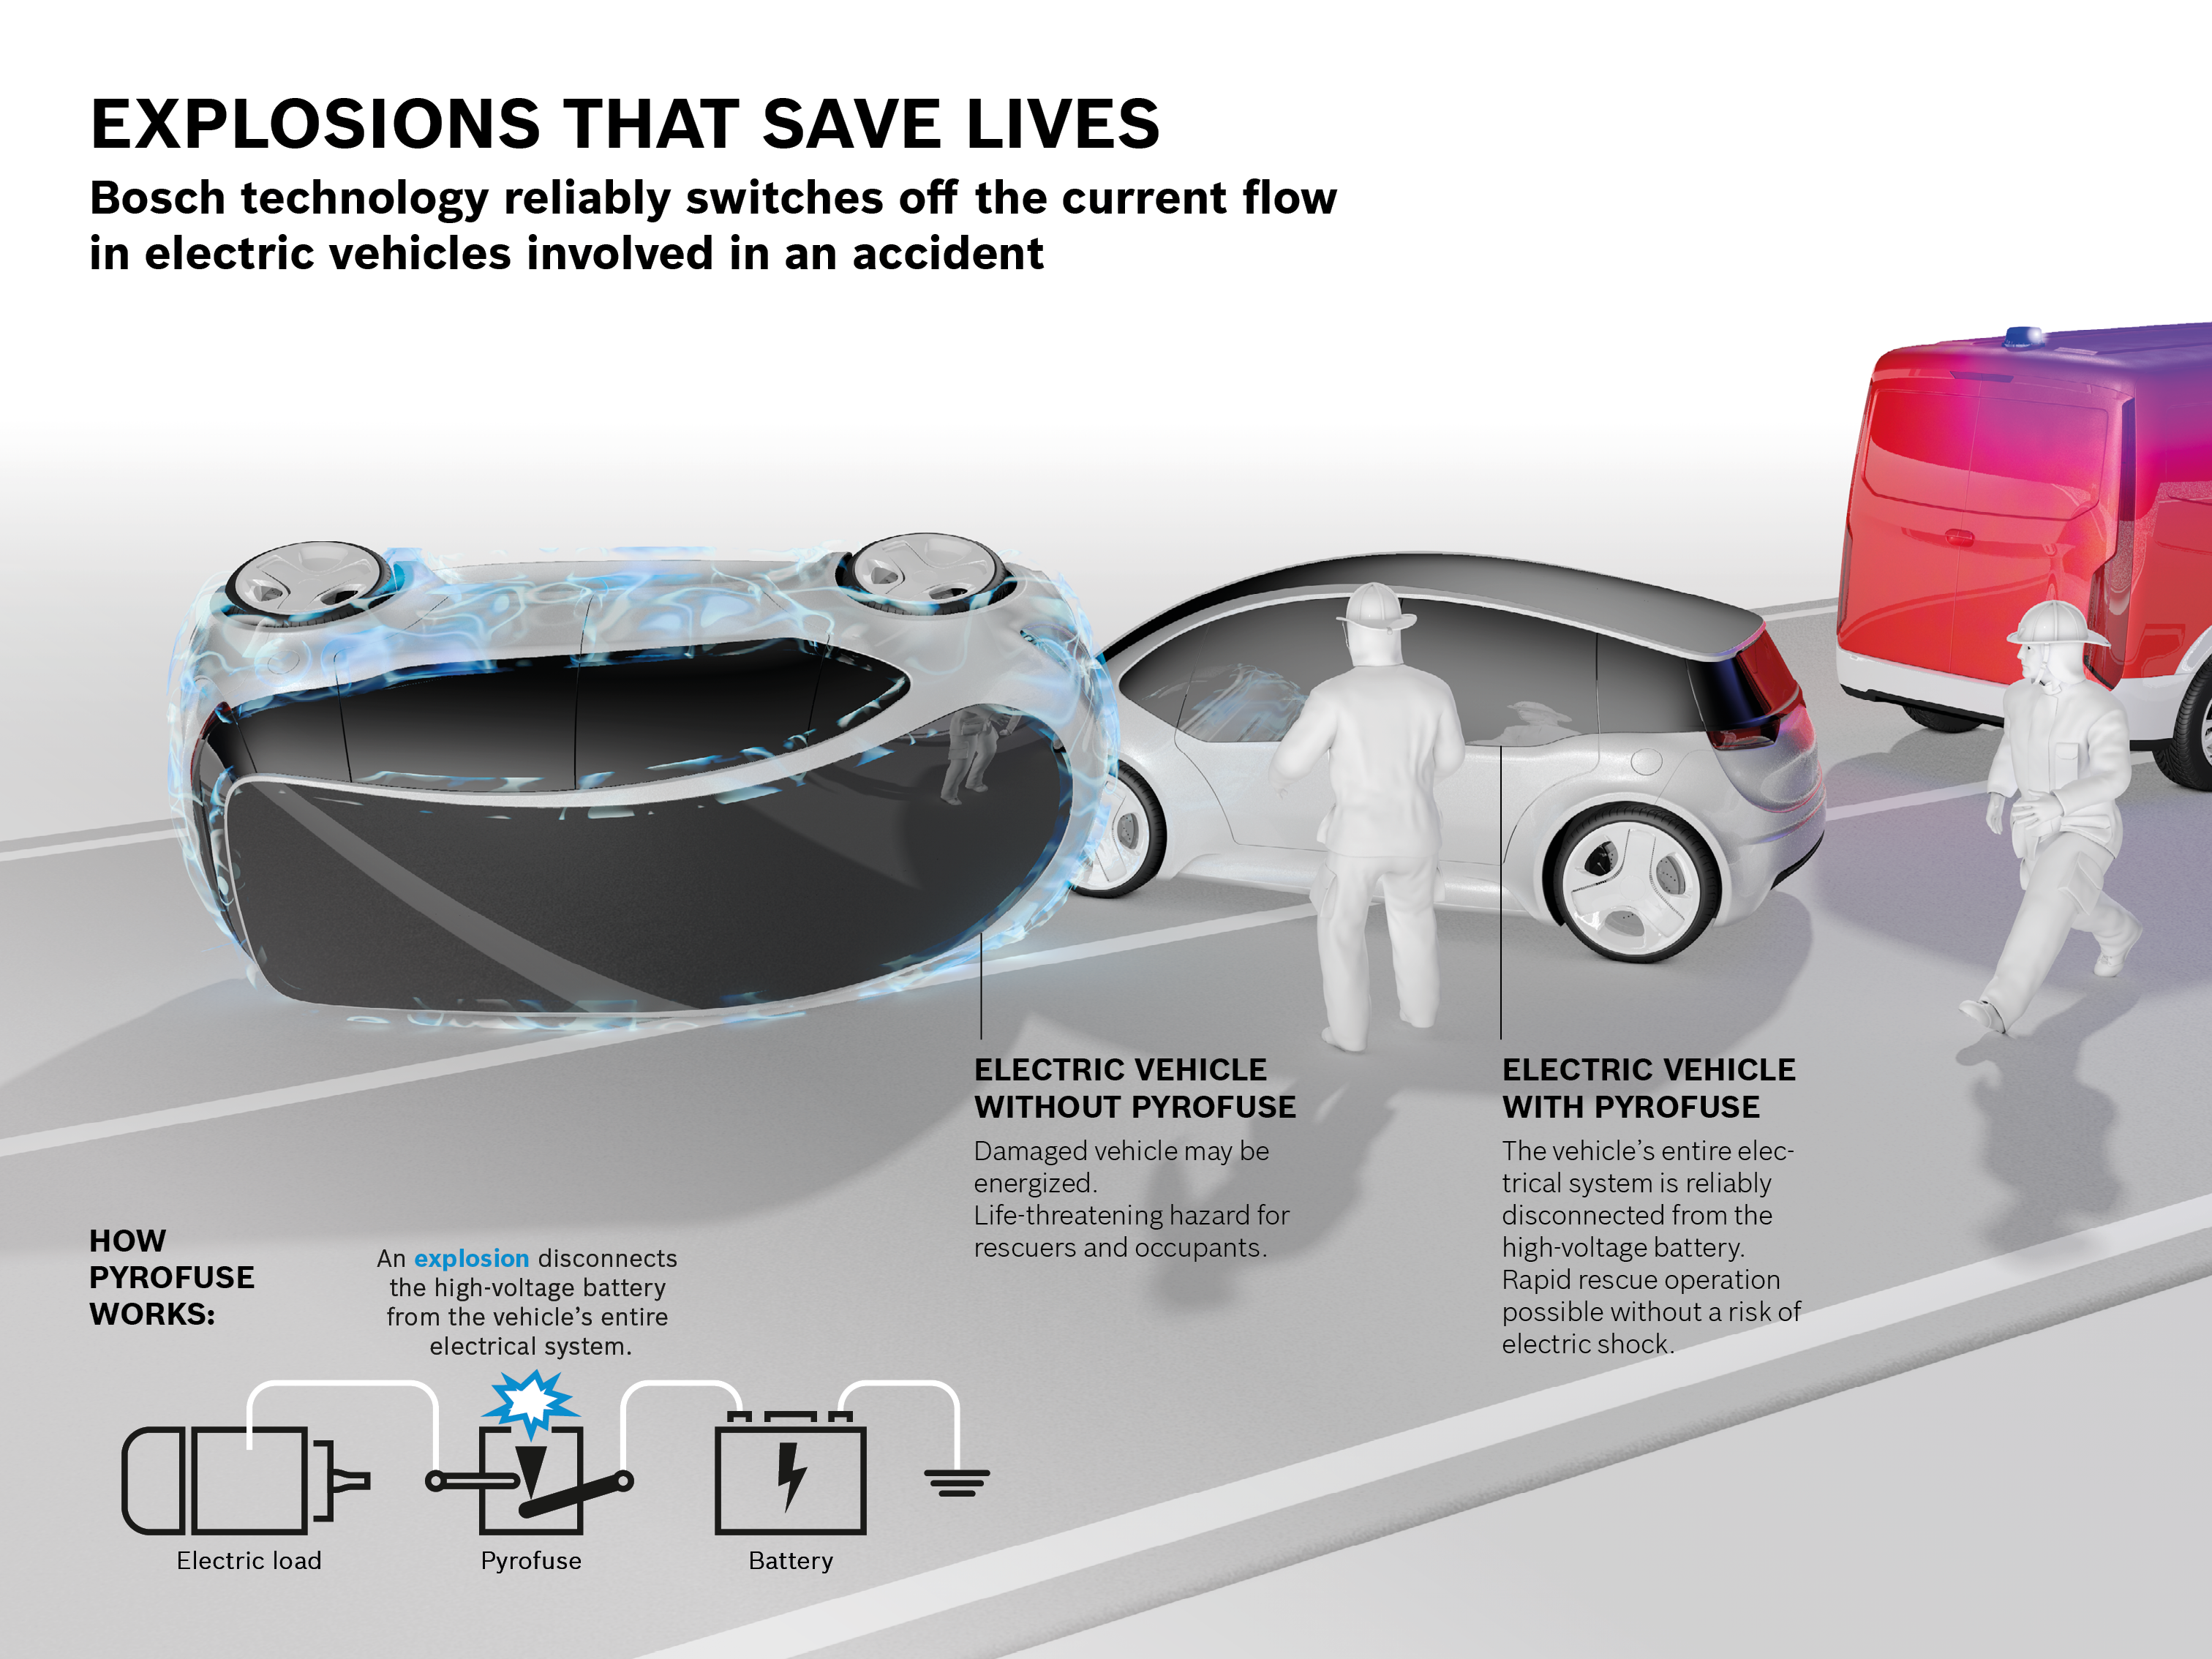 Os semicondutores da Bosch ajudam a evitar o risco de choque elétrico após um acidente 